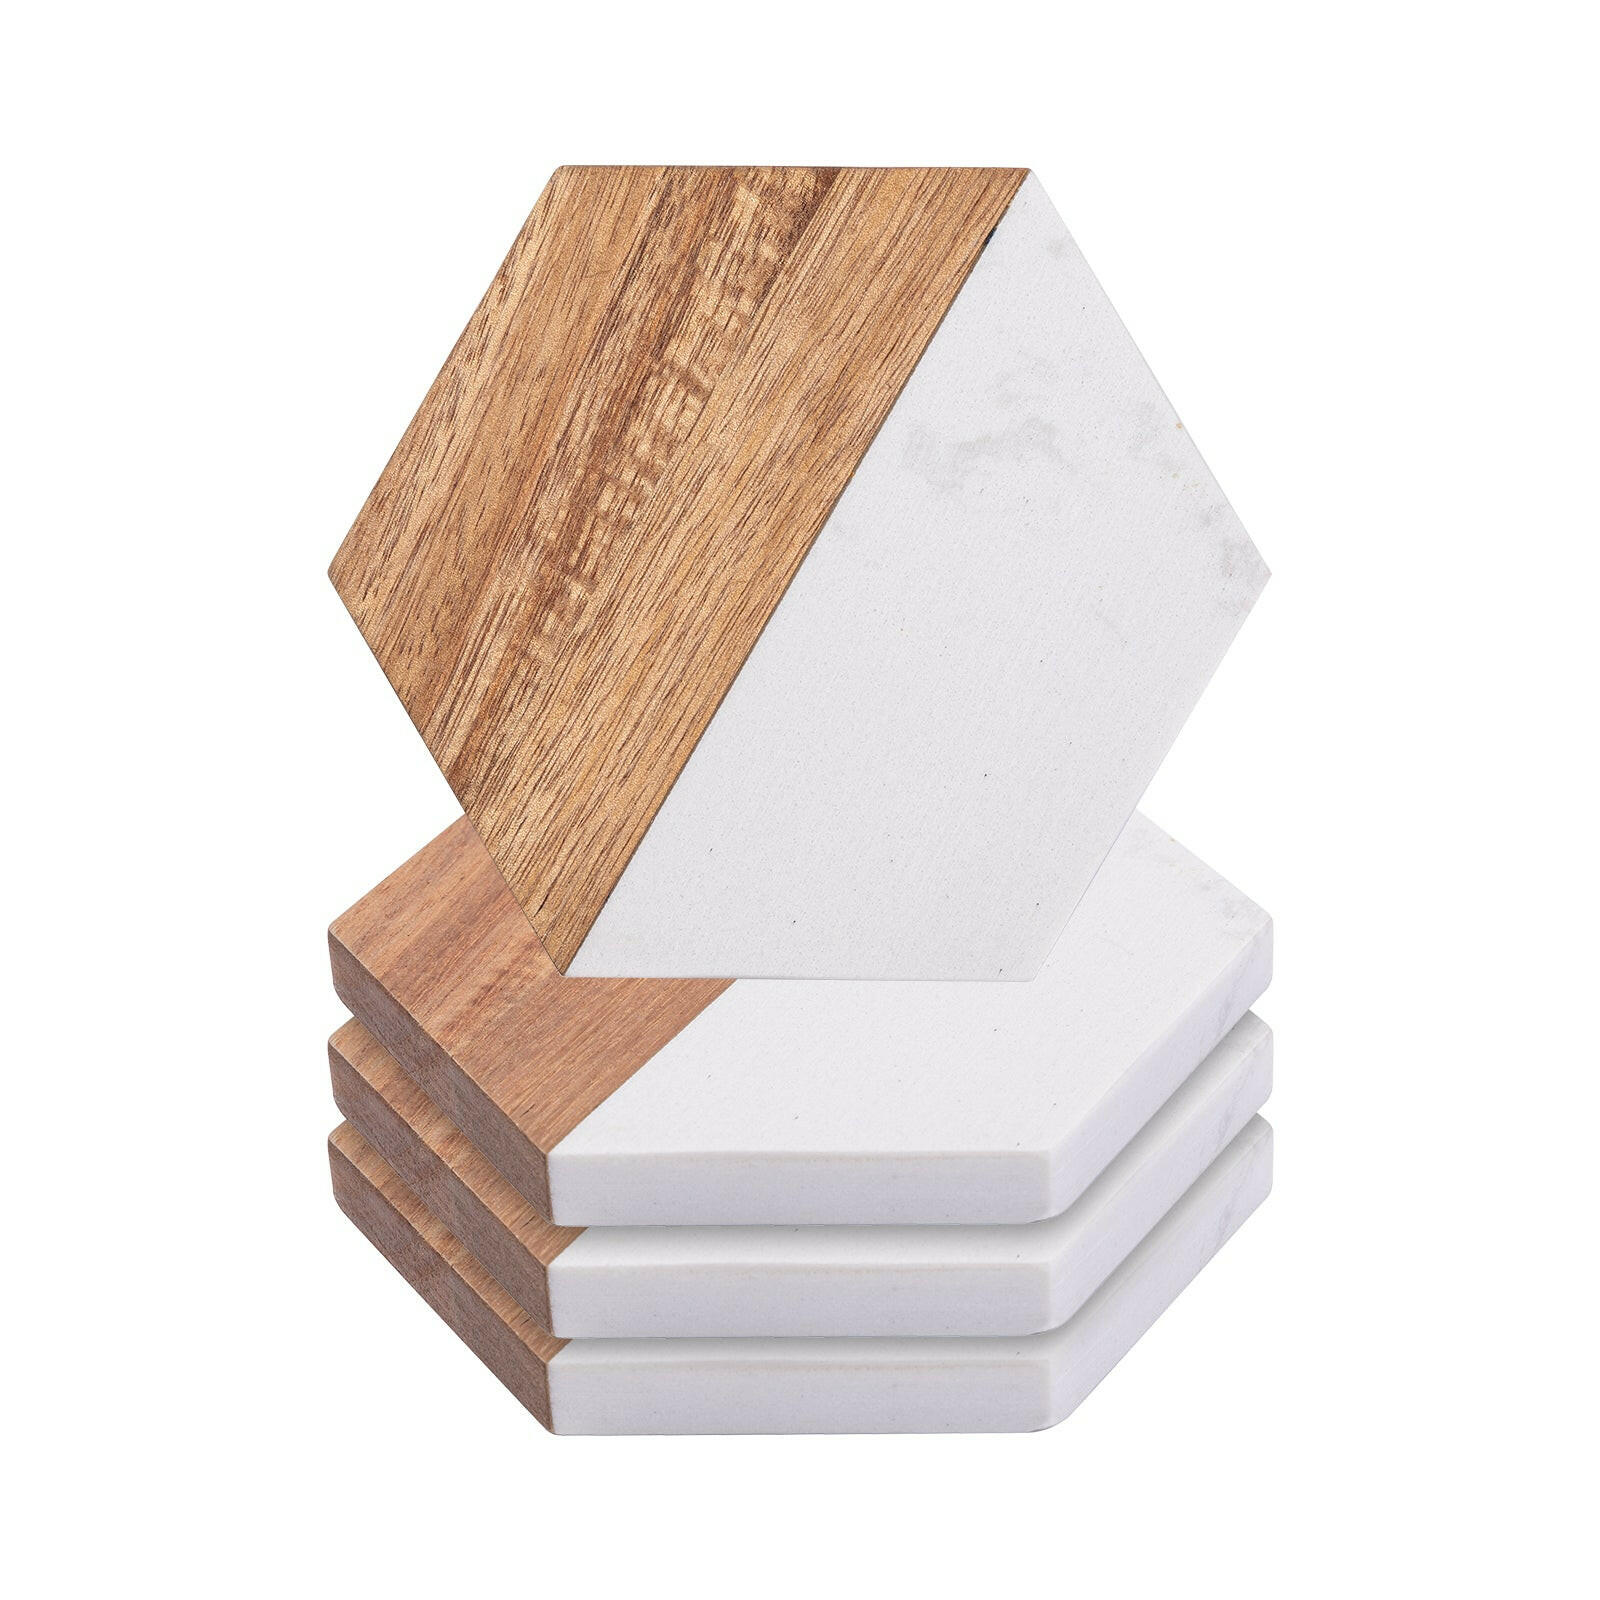 Engravable Hexagonal Marble Wood Coasters - 4 Pack.